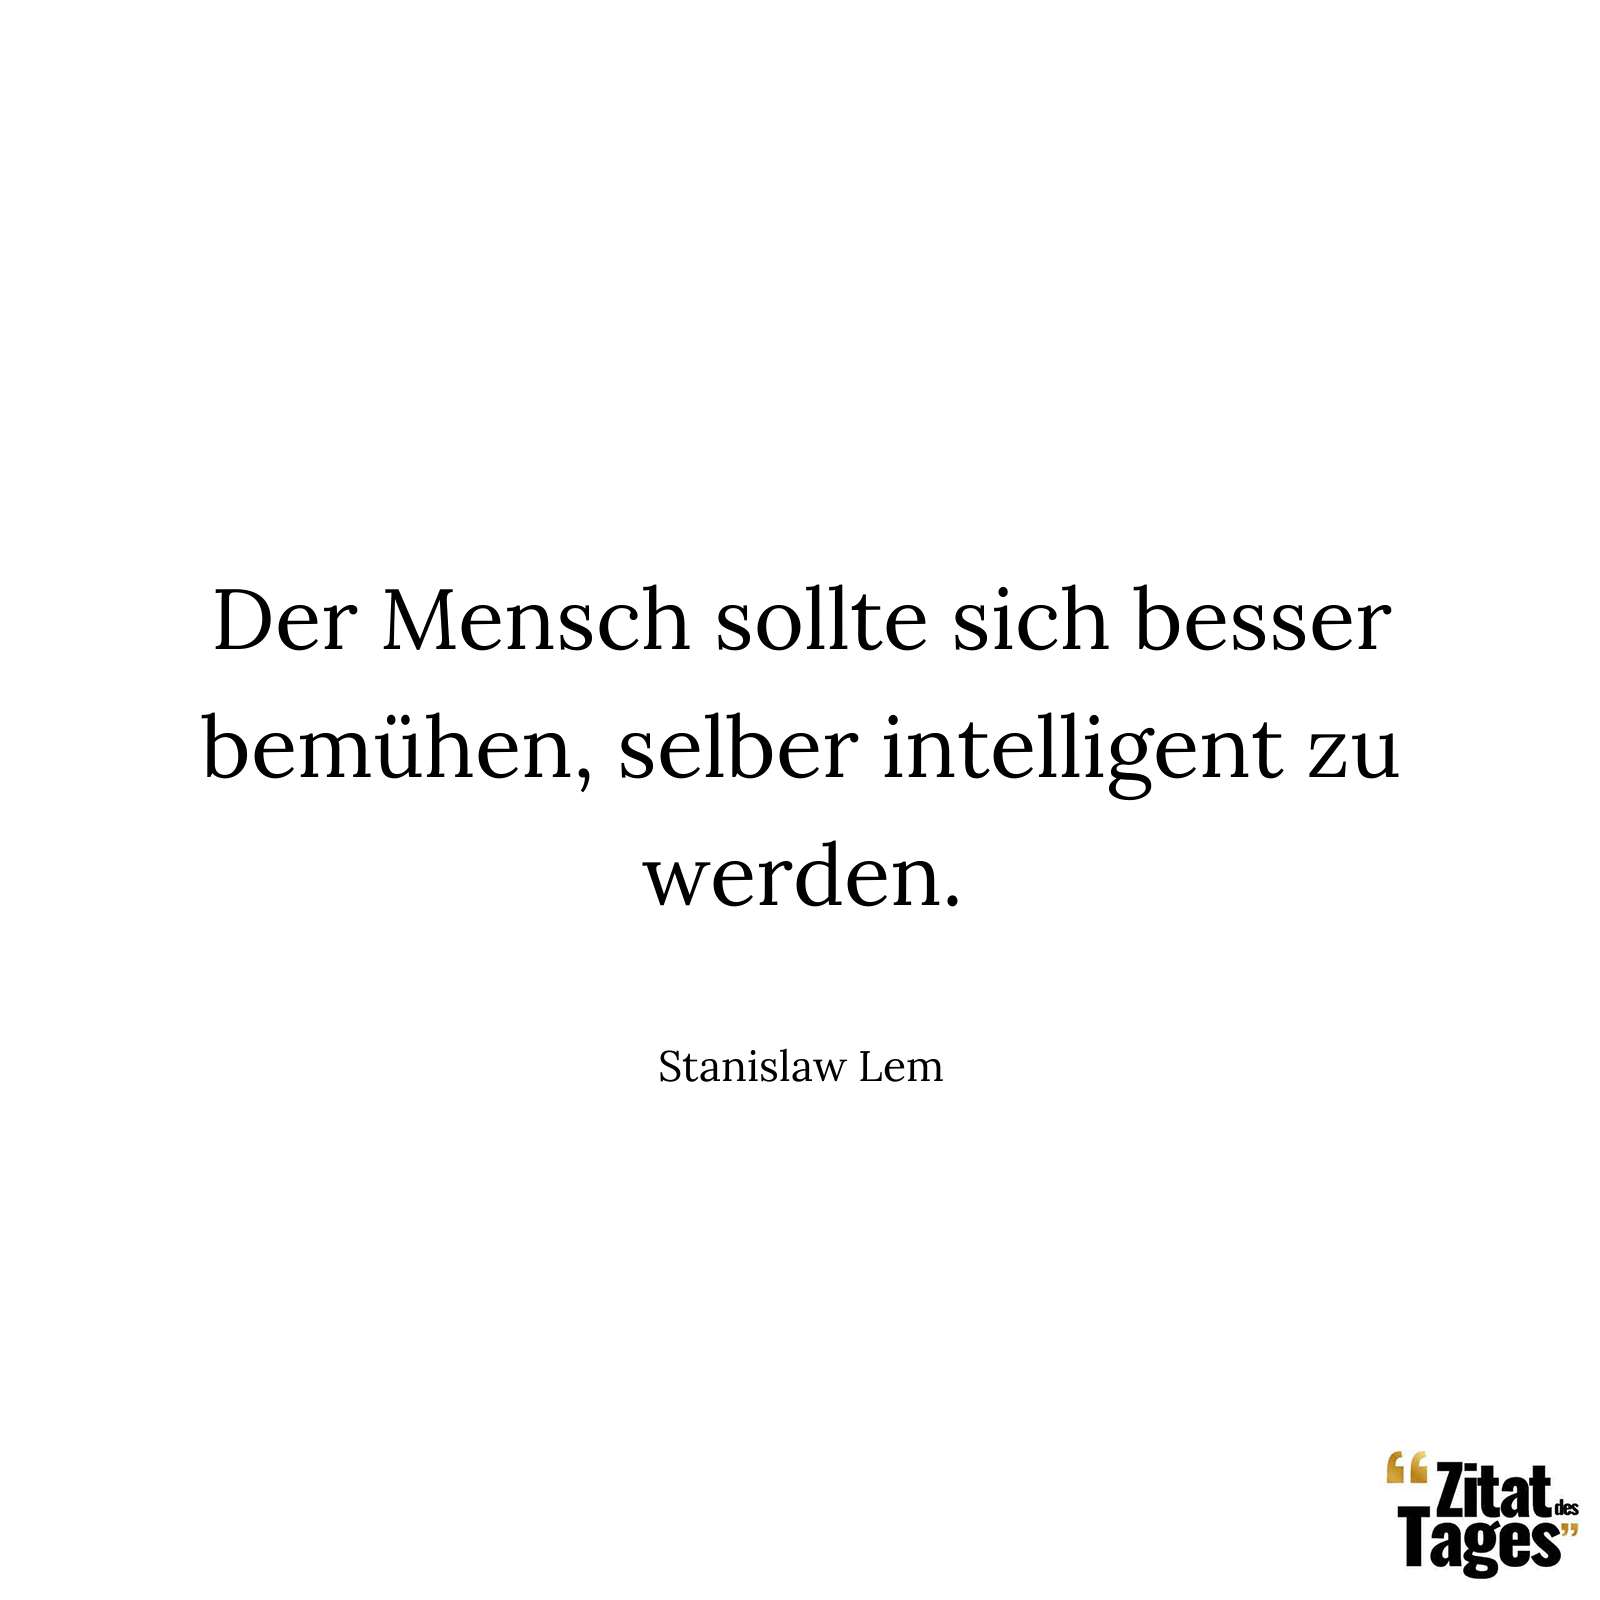 Der Mensch sollte sich besser bemühen, selber intelligent zu werden. - Stanislaw Lem